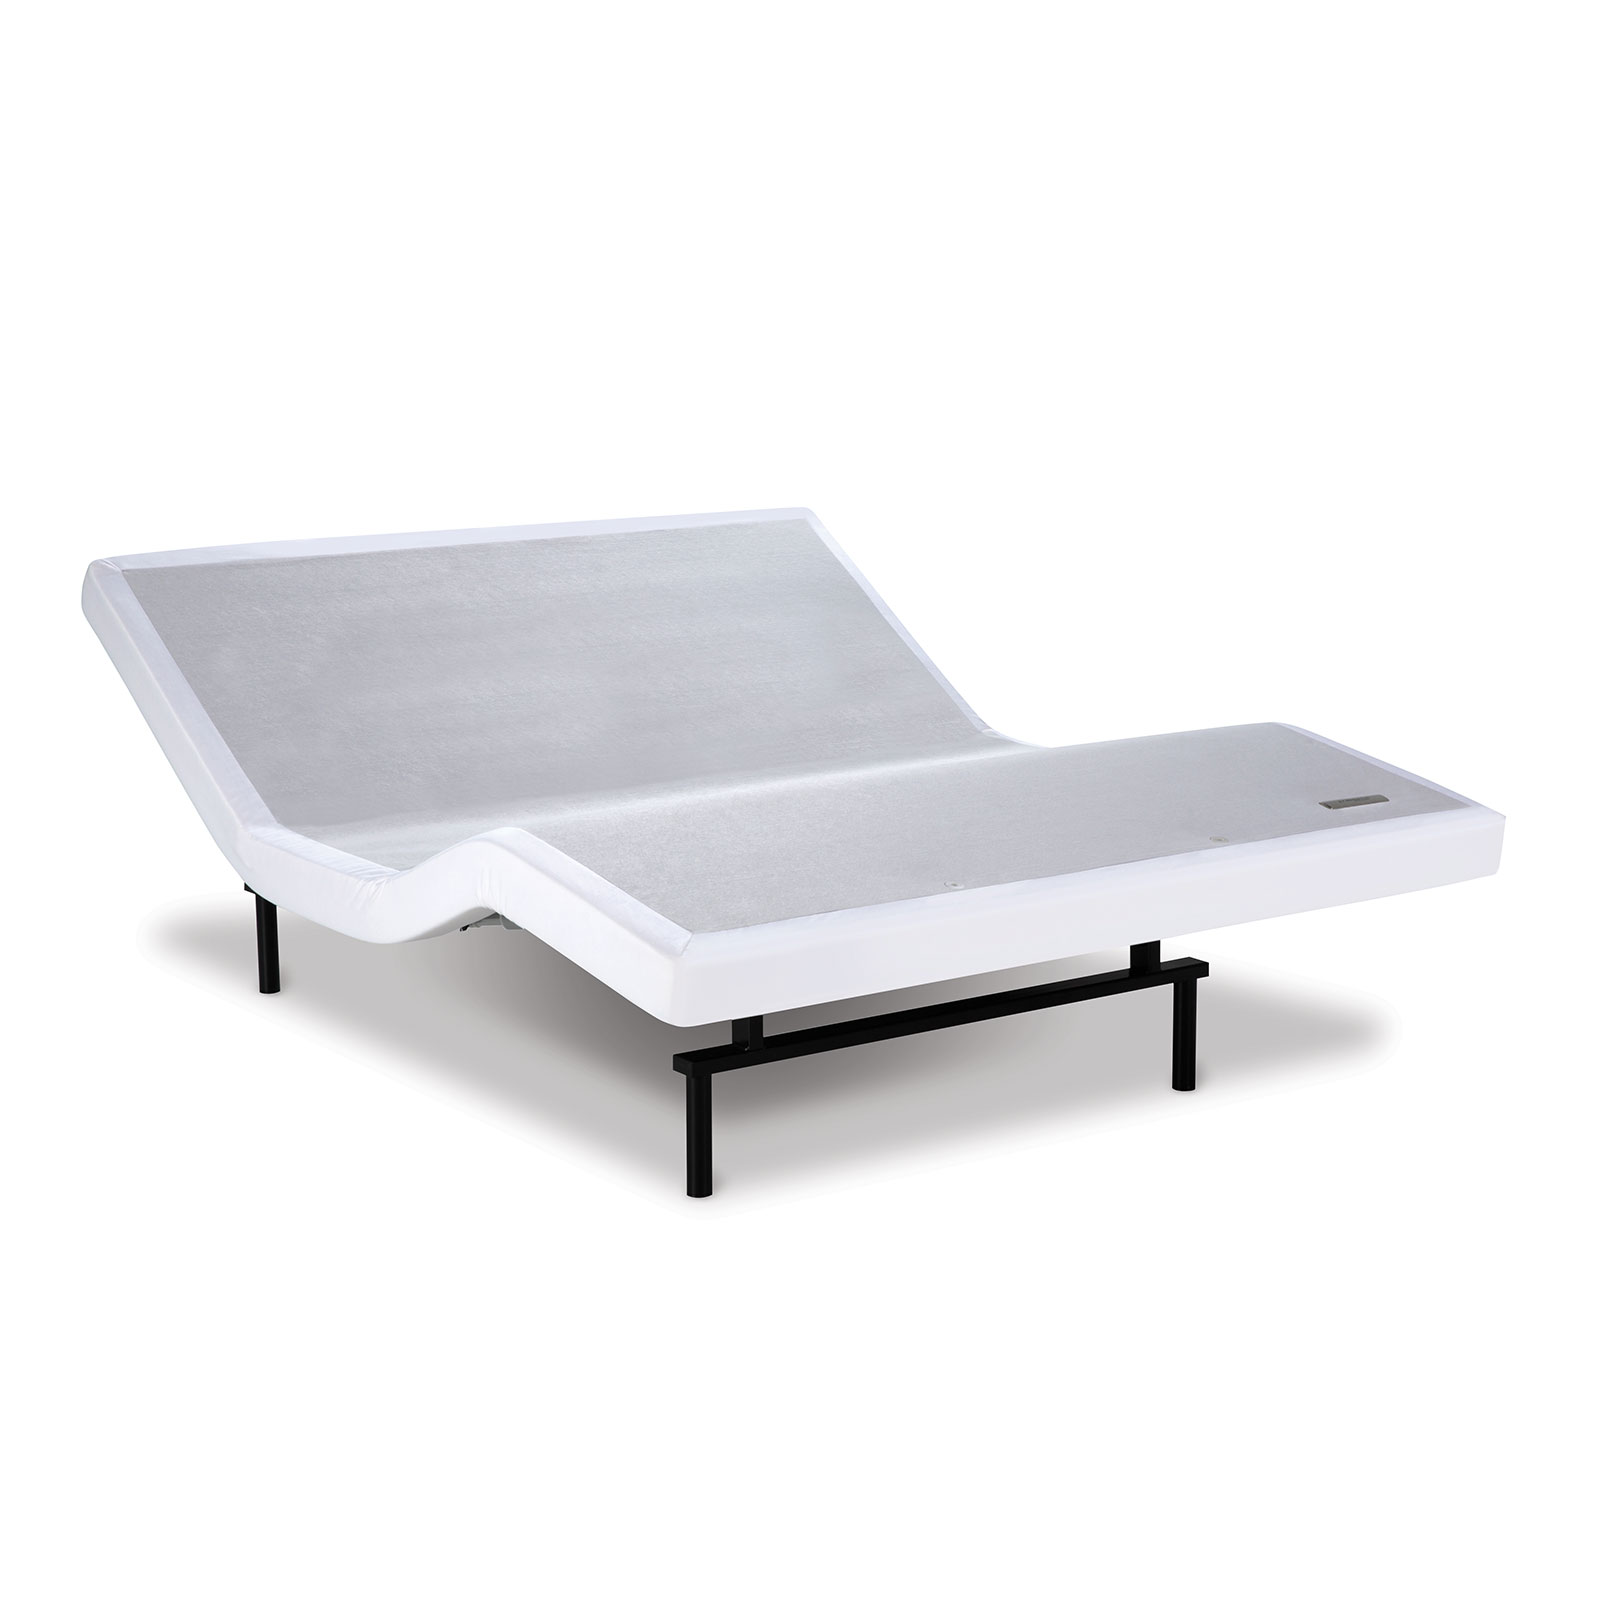 Serta Motion Essentials Adjustable Base, Serta King Size Adjustable Bed Frame